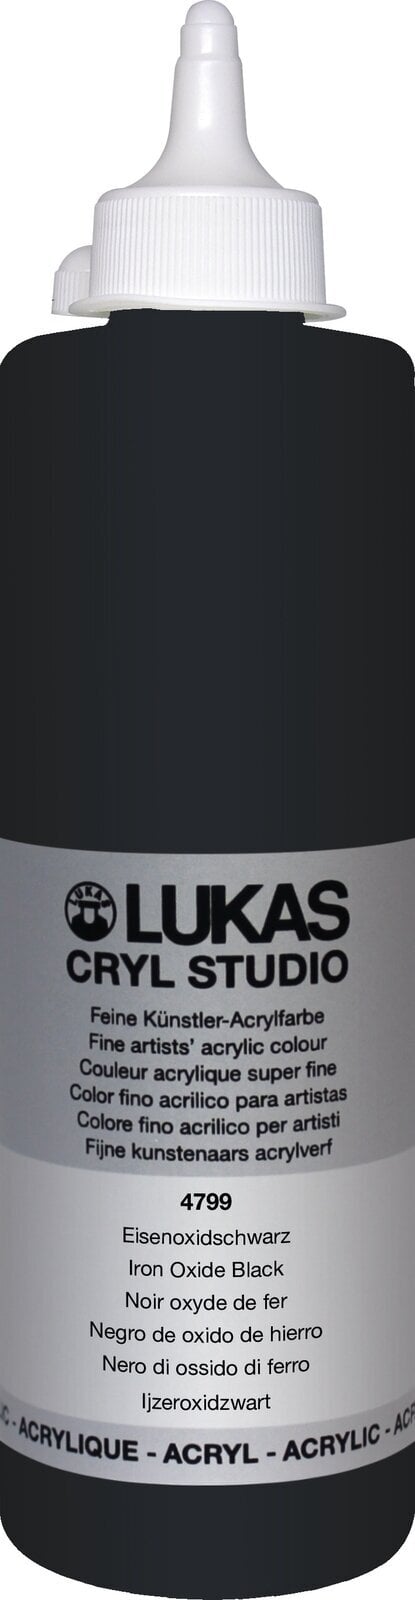 Tinta acrílica Lukas Cryl Studio Tinta acrílica 500 ml Iron Oxid Black